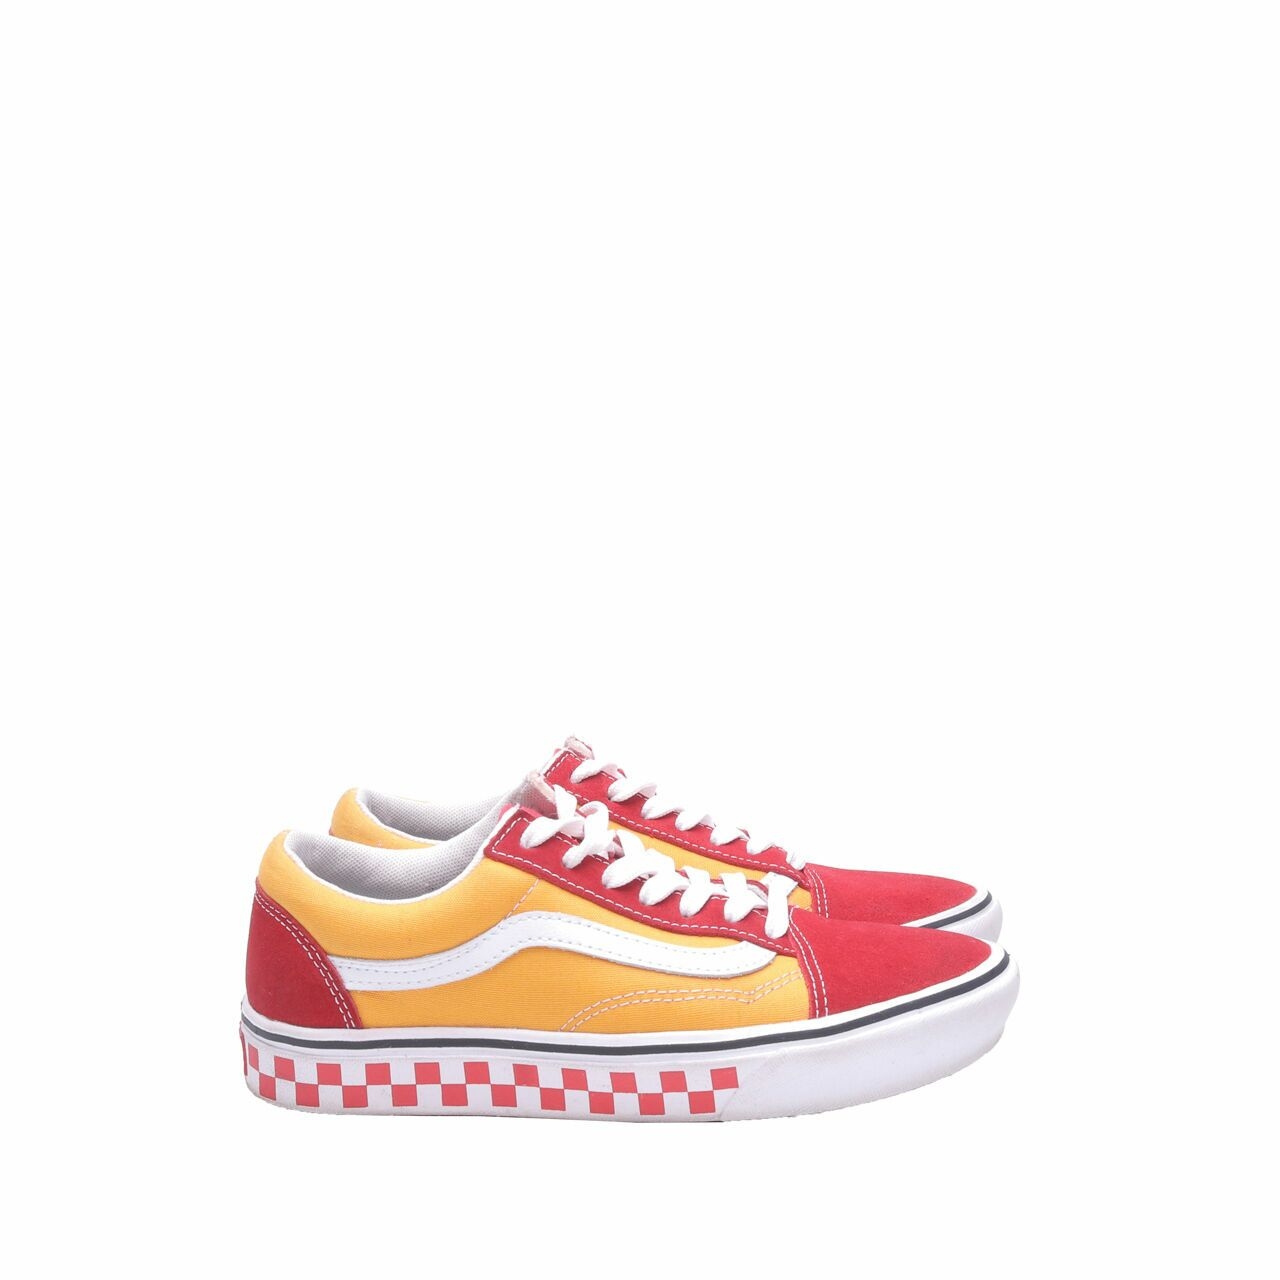 Vans Comfycush Old Skool Red & Yellow Sneakers